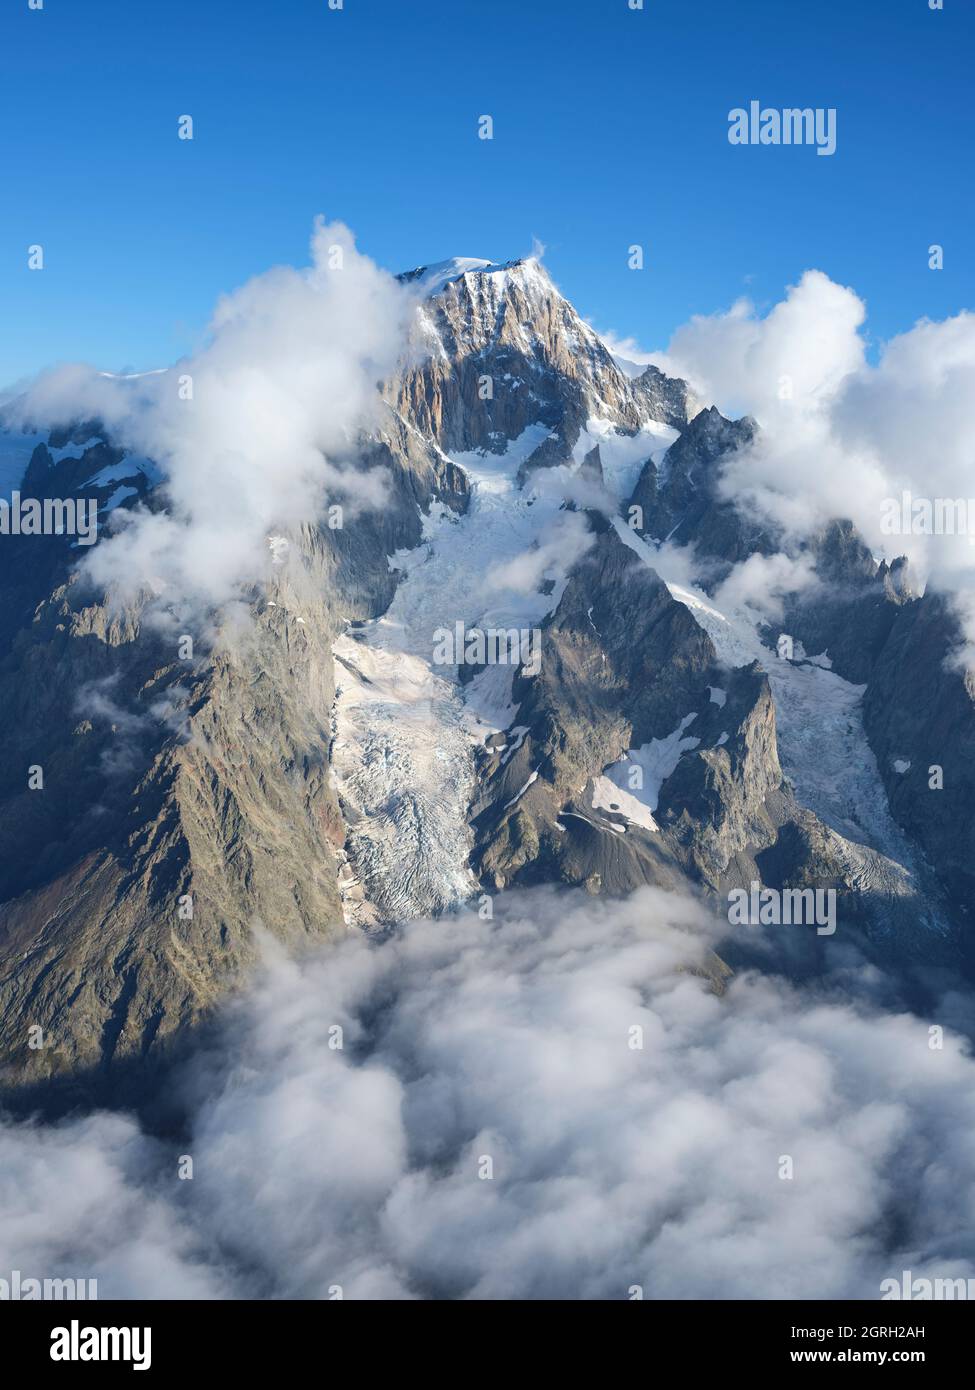 VISTA AEREA. Faccia orientale del Monte Bianco nella luce del mattino sopra alcune nuvole basse. Courmayeur, Valle d'Aosta, Italia. Foto Stock